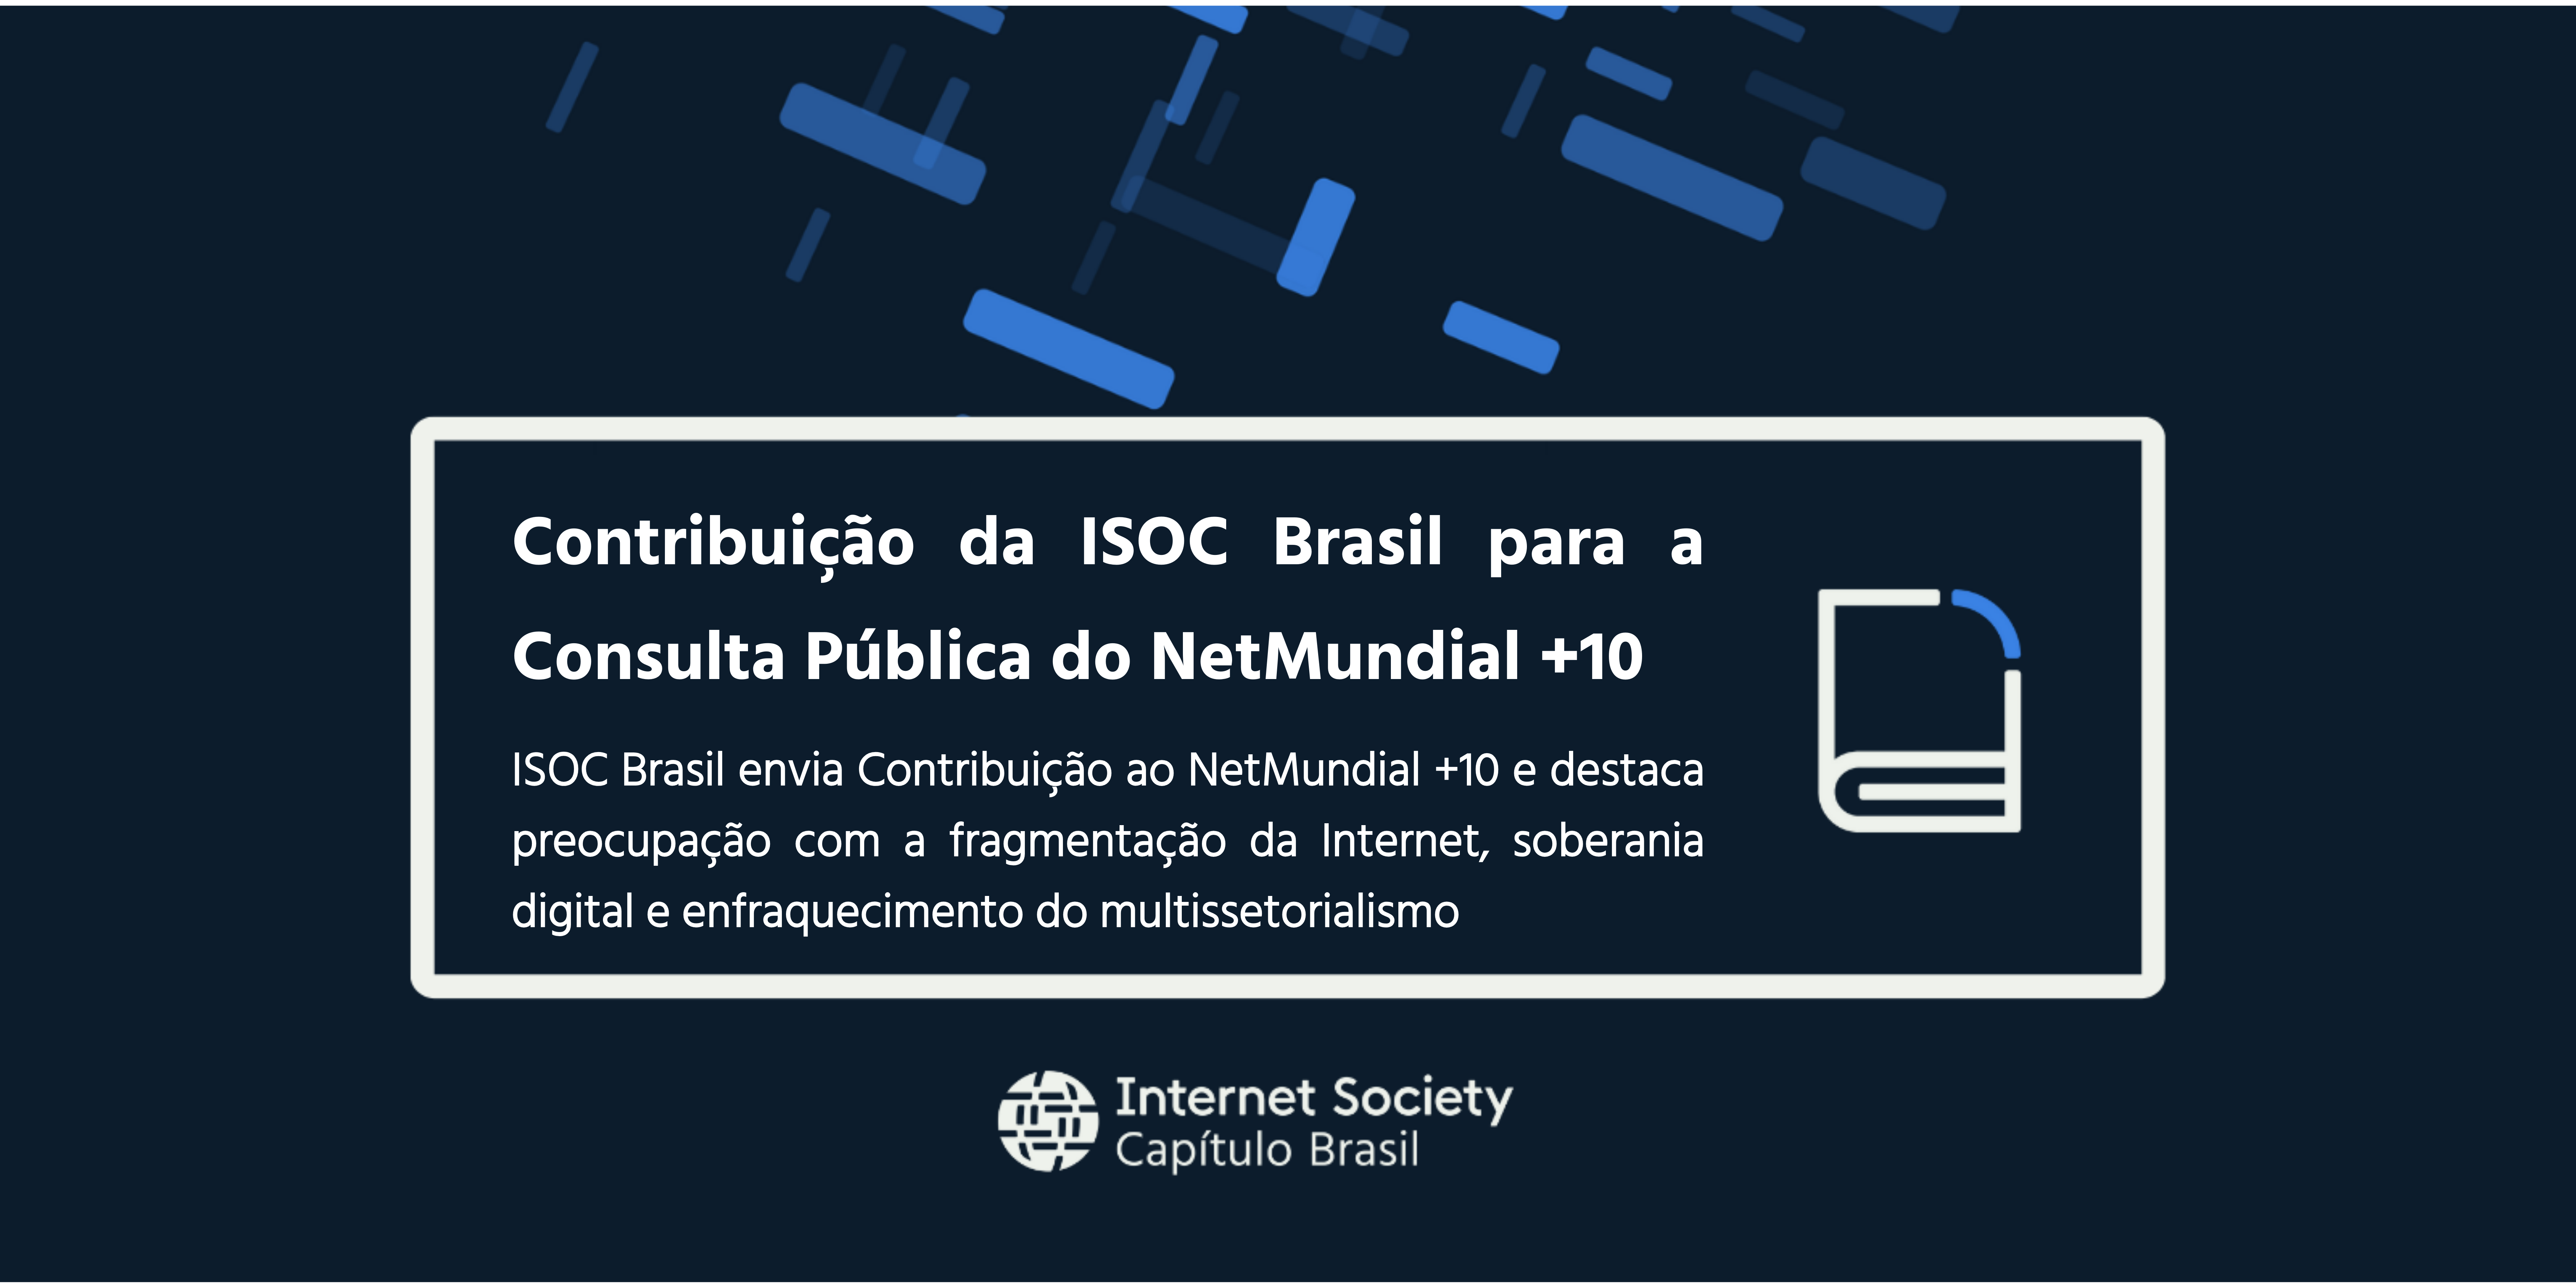 Contribuição da ISOC Brasil para a Consulta Pública do NetMundial +10